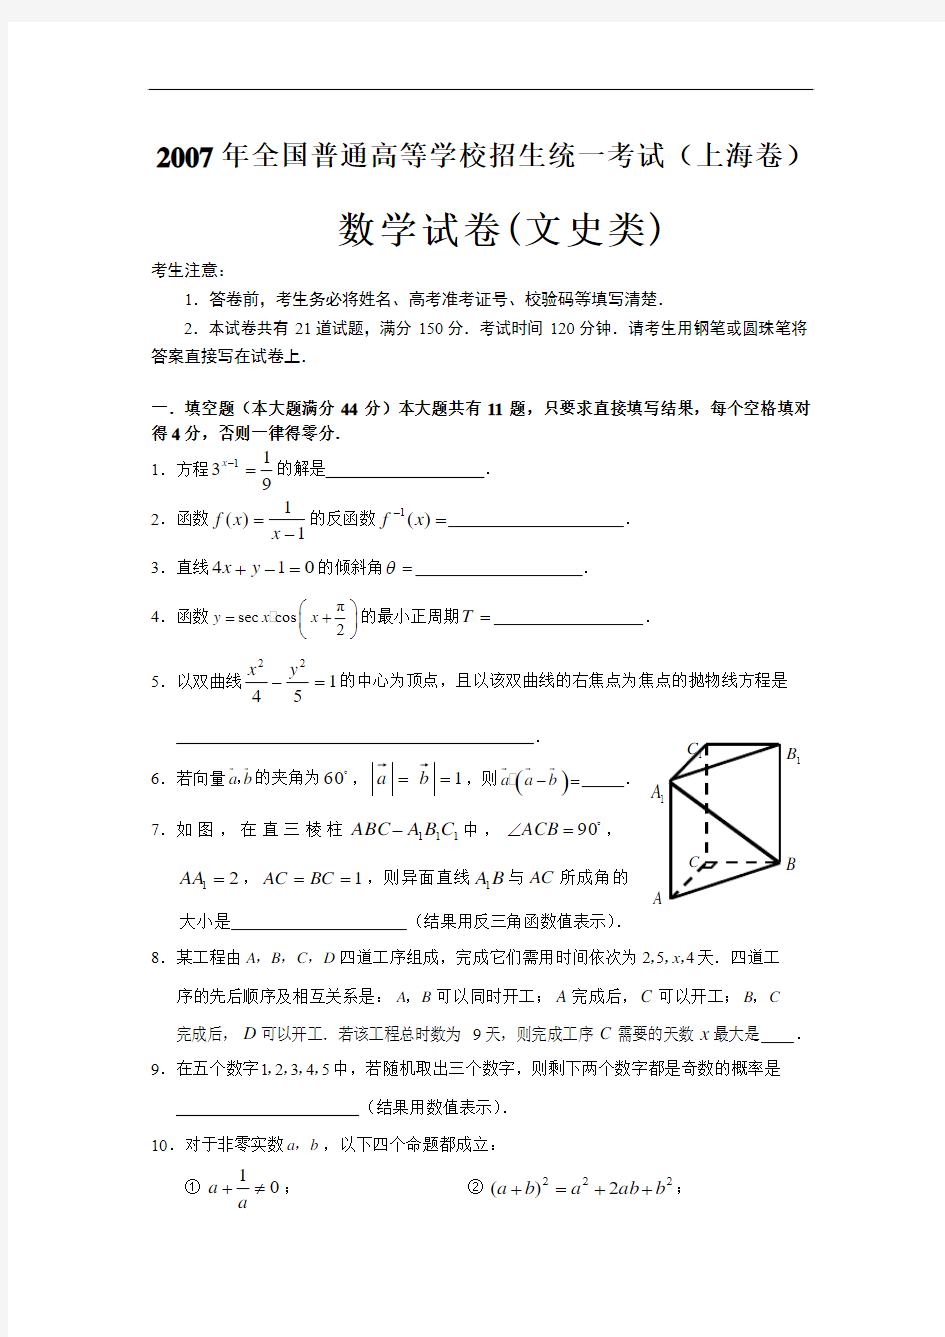 2007年高考上海数学文科卷试题及答案